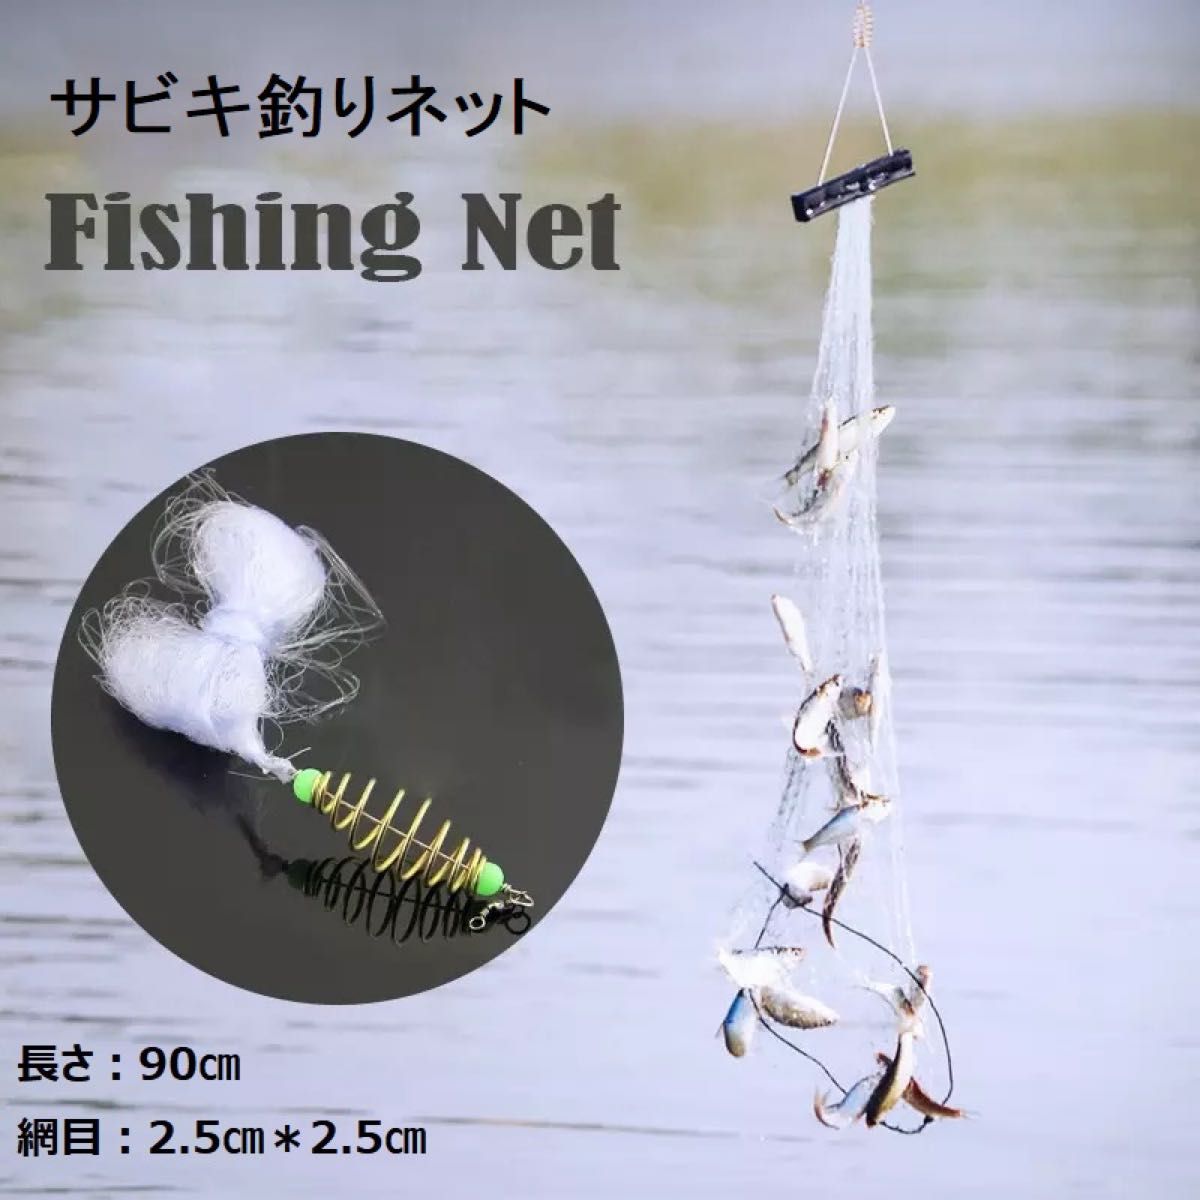 サビキ釣りネット 釣りネット 6個セット 仕掛け網 爆釣り 定置網 漁具 フィッシング 網 ネット34